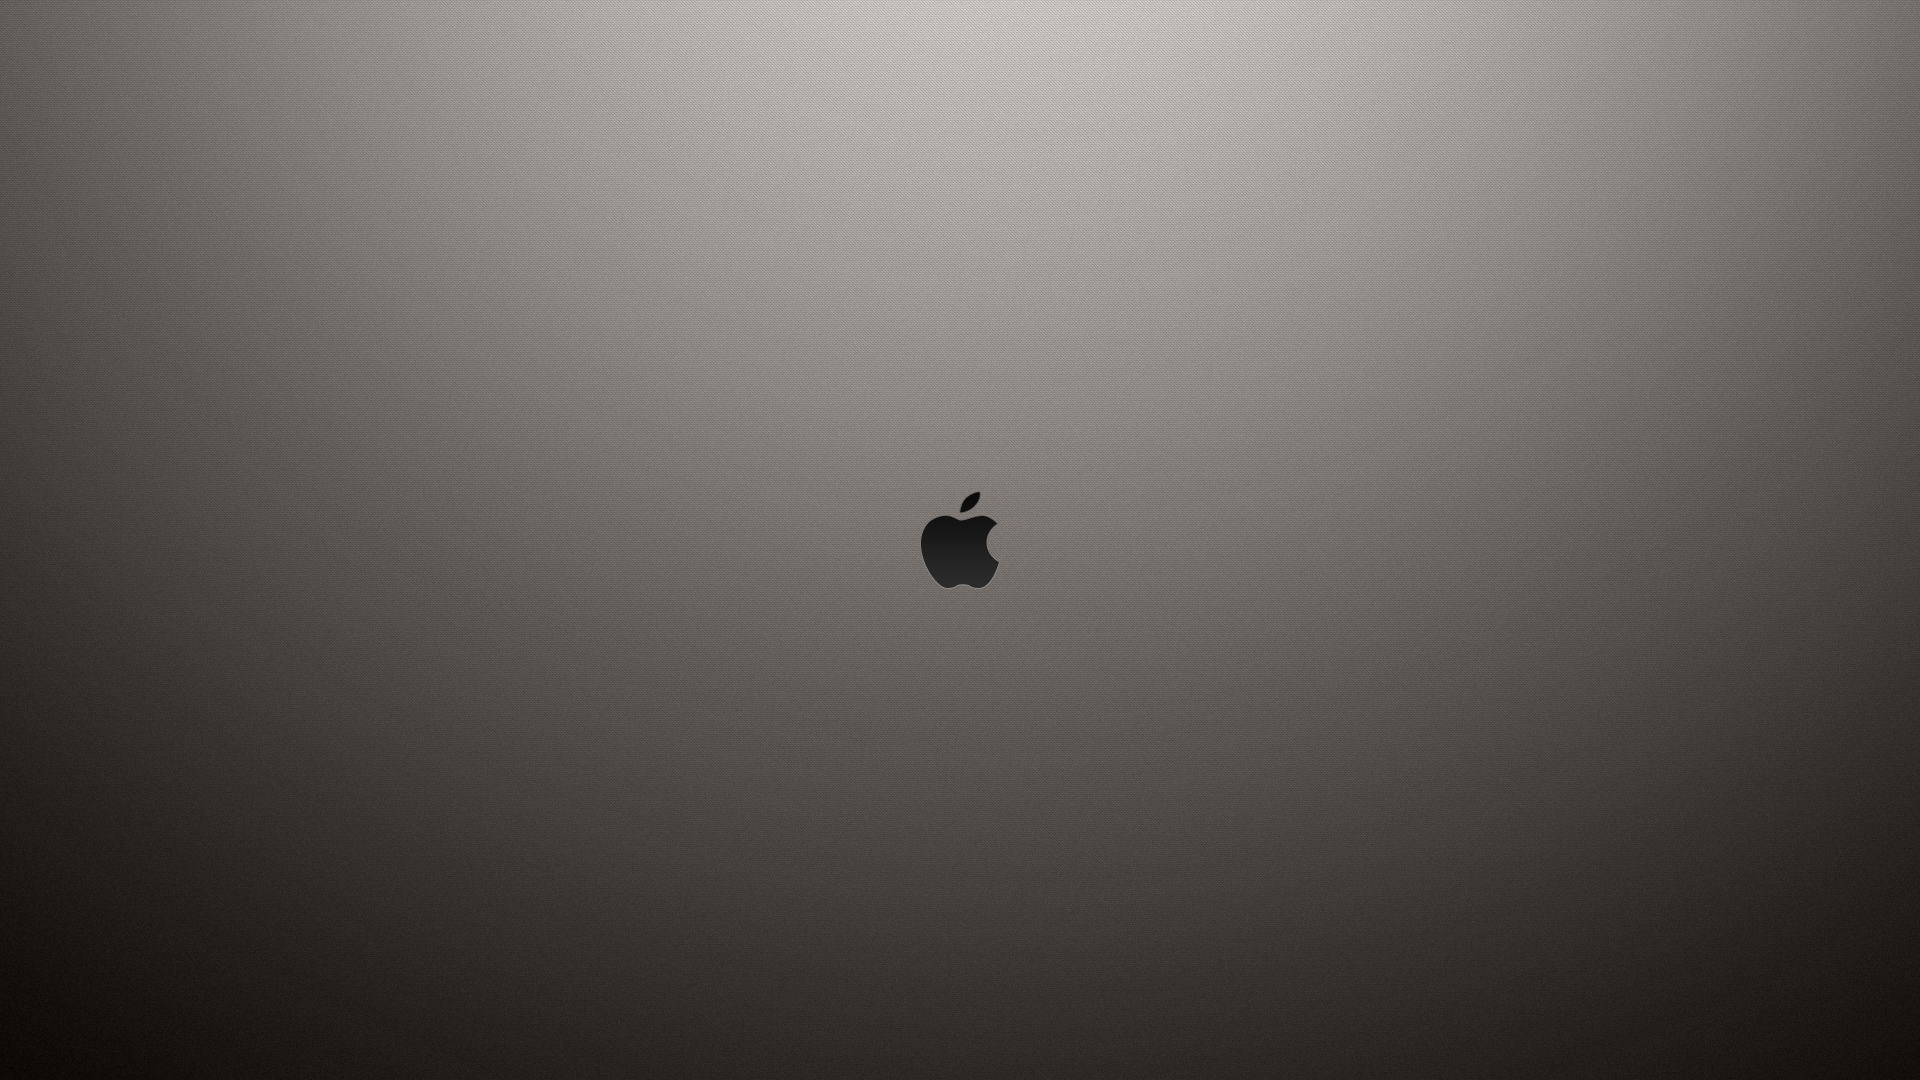 General 1920x1080 Apple Inc. digital art minimalism logo texture